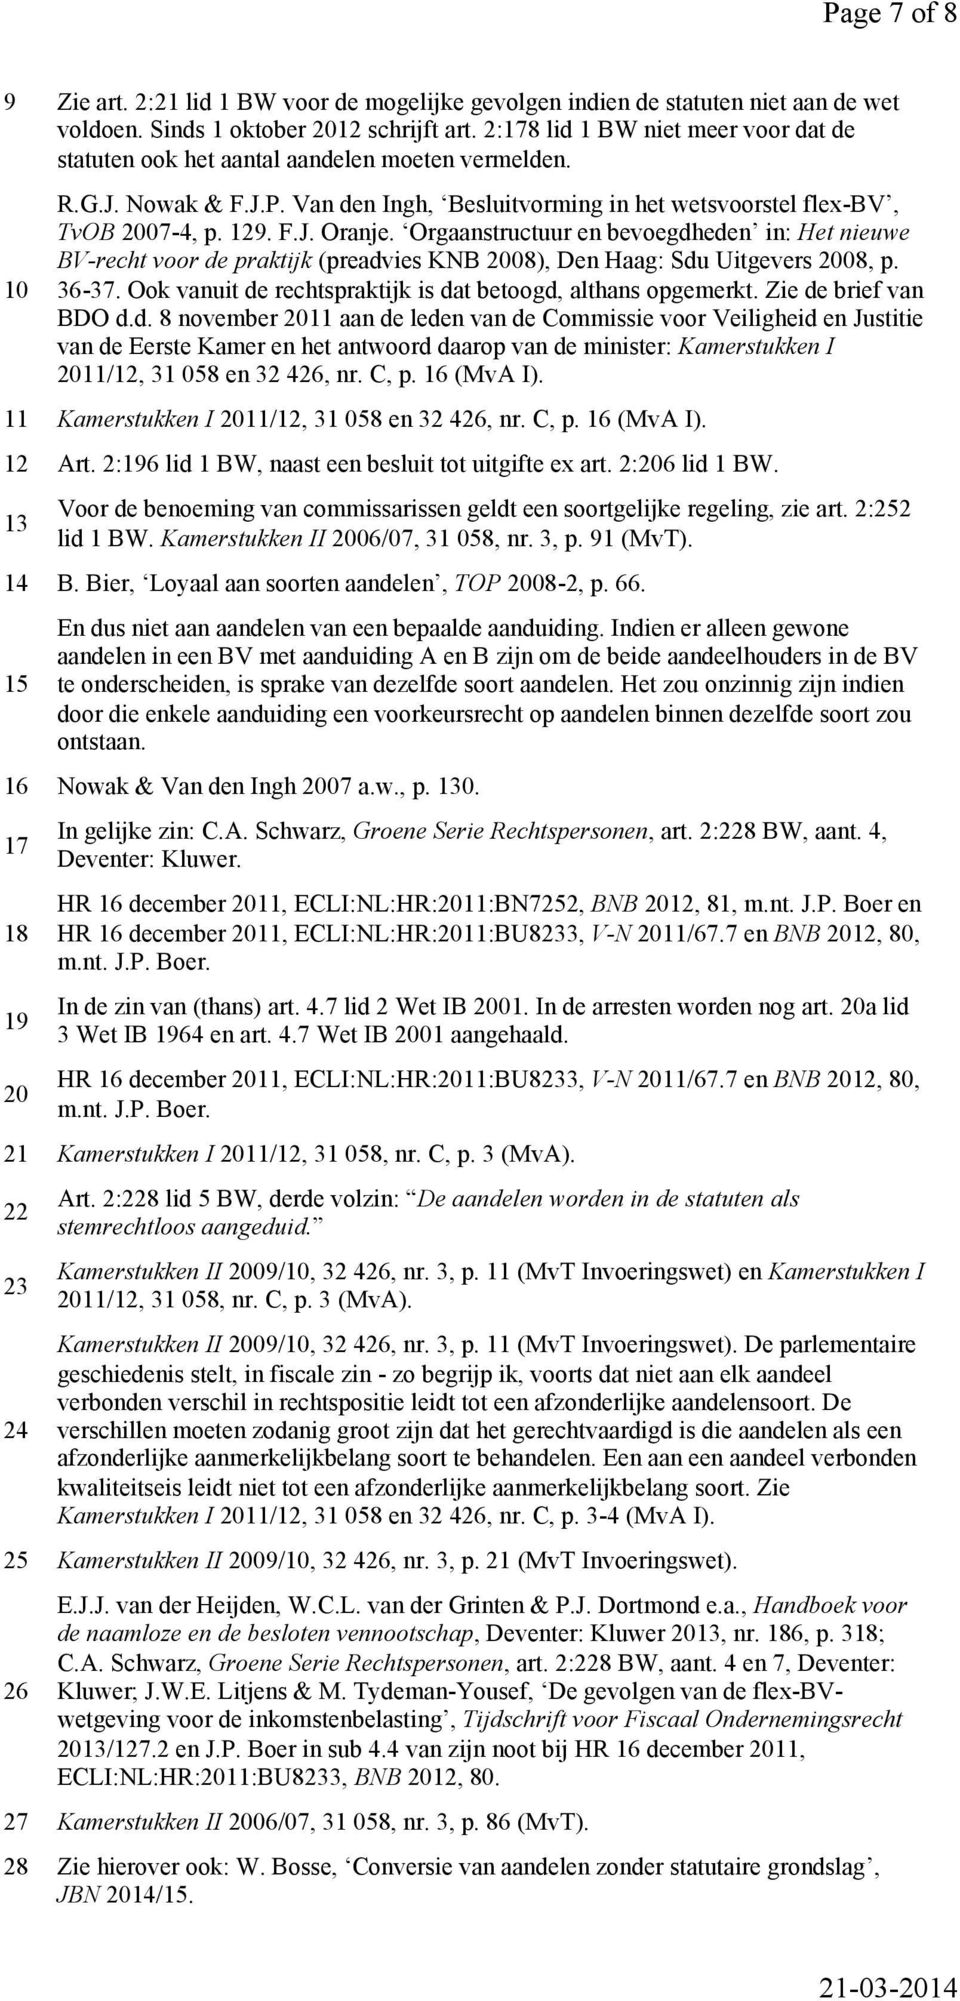 Orgaanstructuur en bevoegdheden in: Het nieuwe BV-recht voor de praktijk (preadvies KNB 2008), Den Haag: Sdu Uitgevers 2008, p. 36-37. Ook vanuit de rechtspraktijk is dat betoogd, althans opgemerkt.